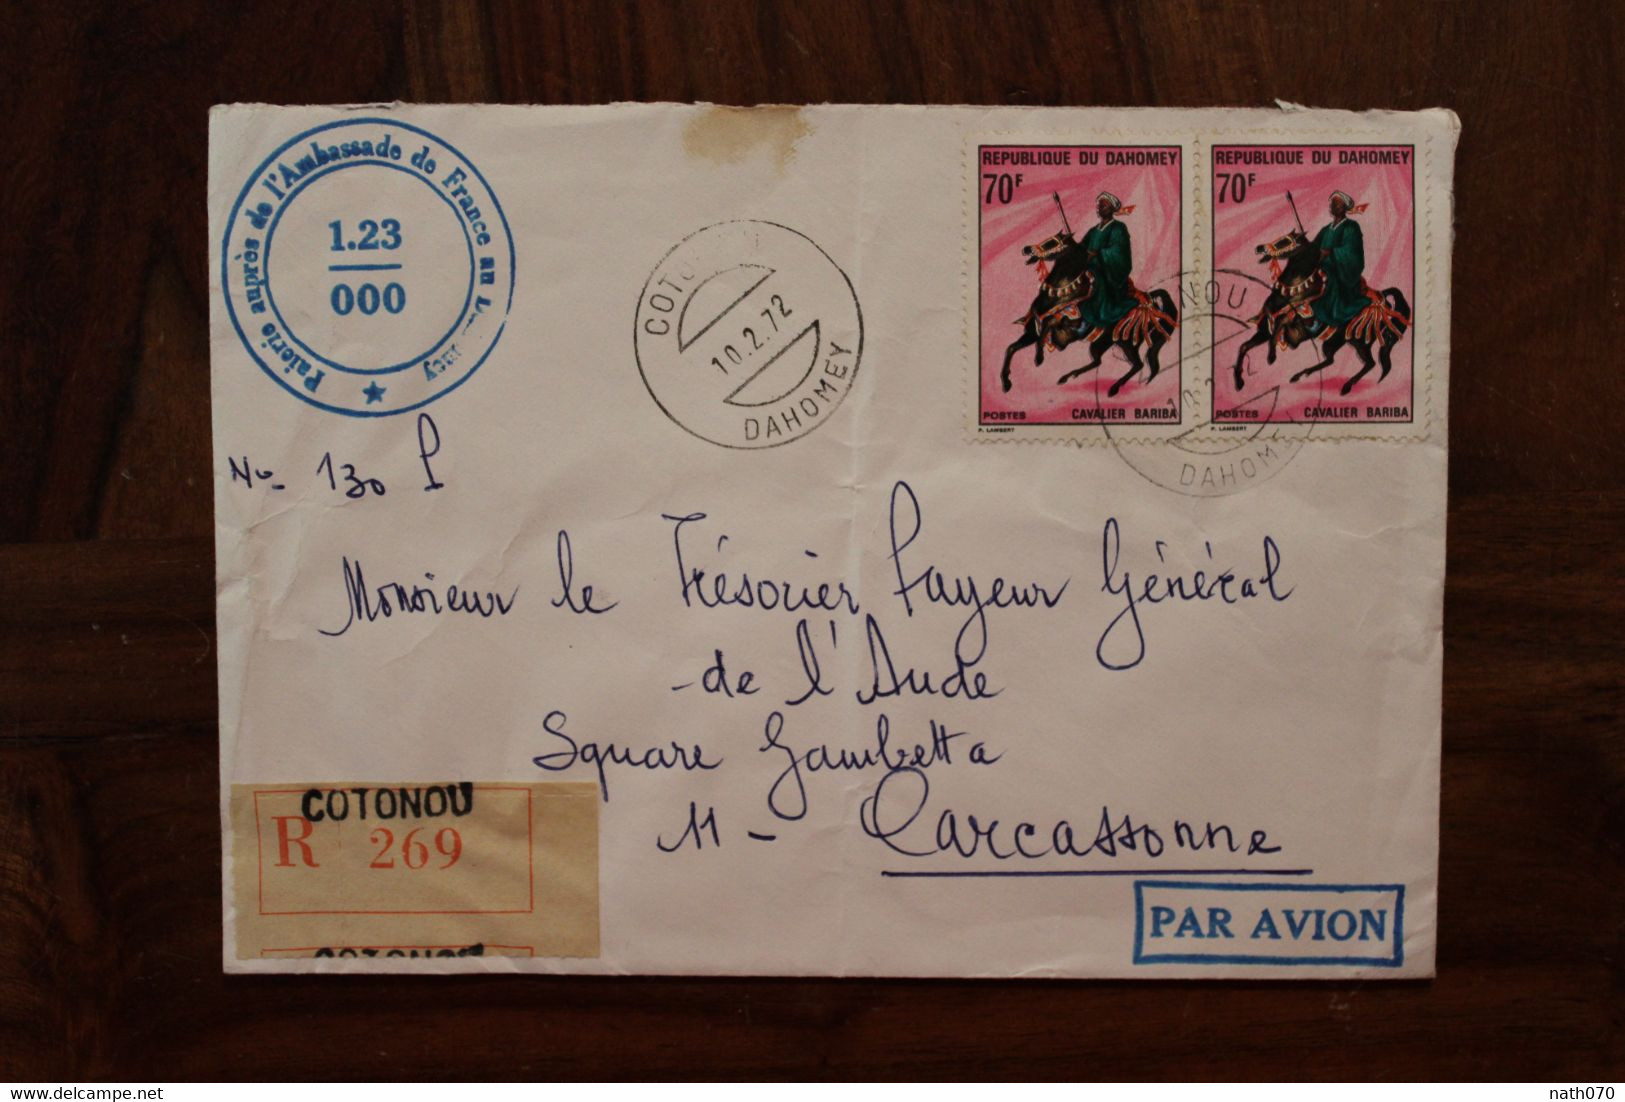 1972 Dahomey Bénin Ambassade De France Pour Carcassonne Enveloppe Cover Recommandé Registered Reco - Benin - Dahomey (1960-...)